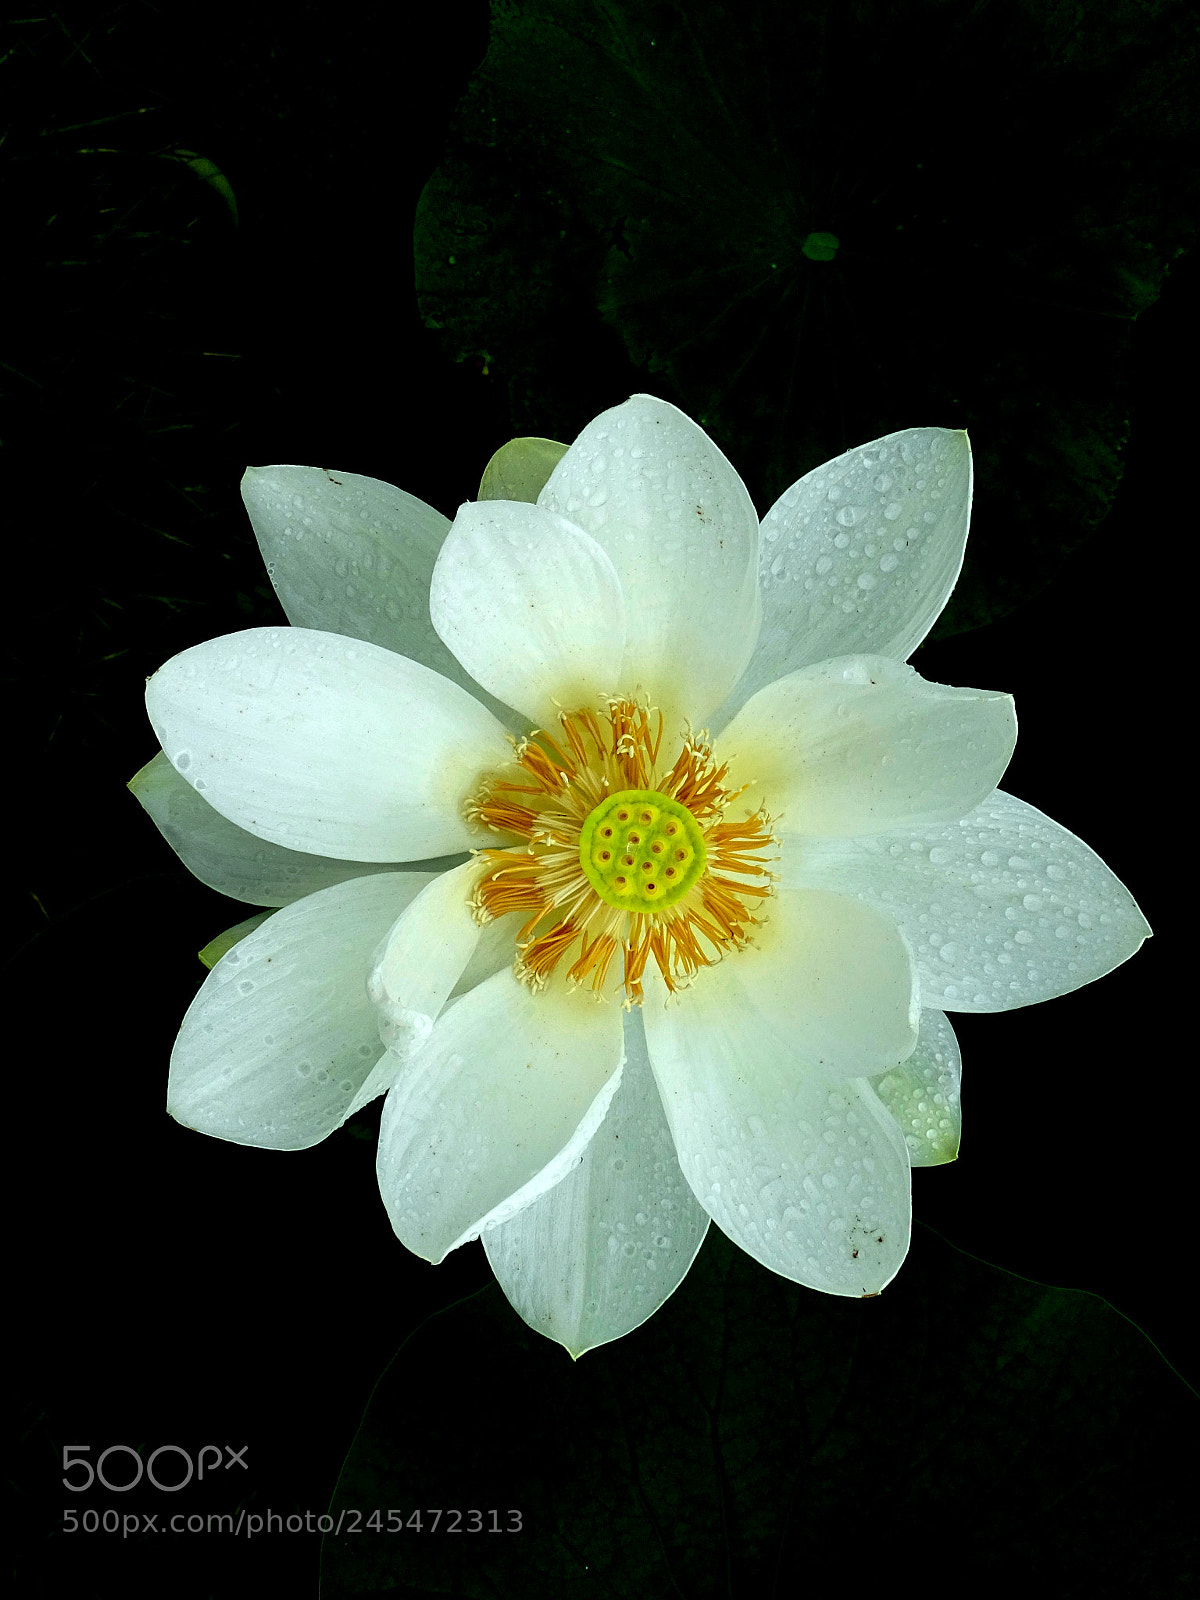 Sony Cyber-shot DSC-HX400V sample photo. White lotus photography